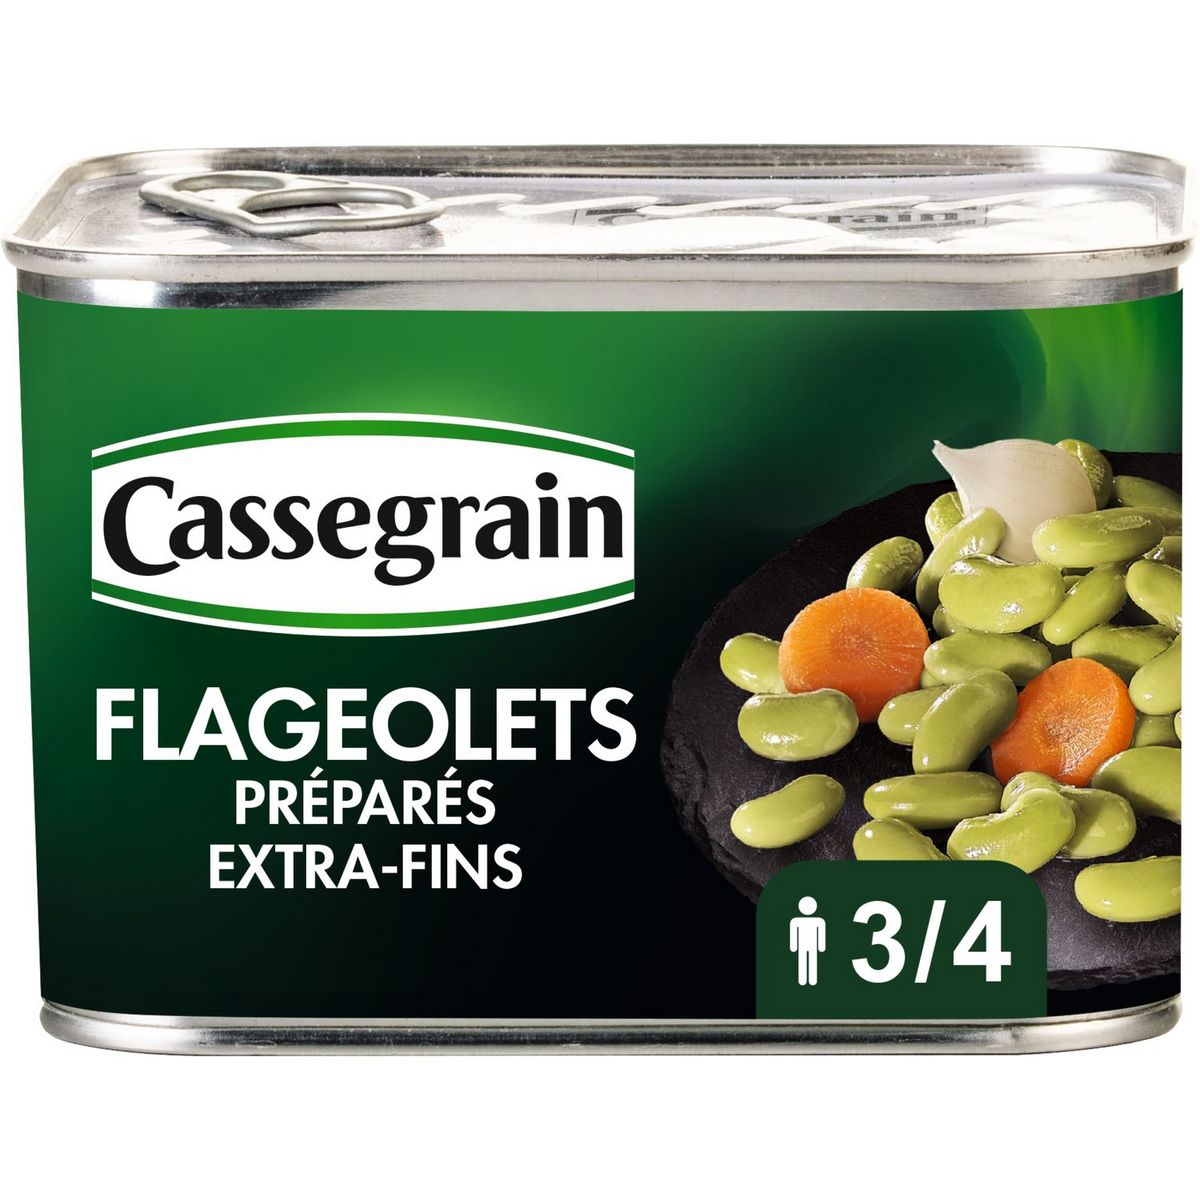 CASSEGRAIN Flageolets préparés extra fins 465g